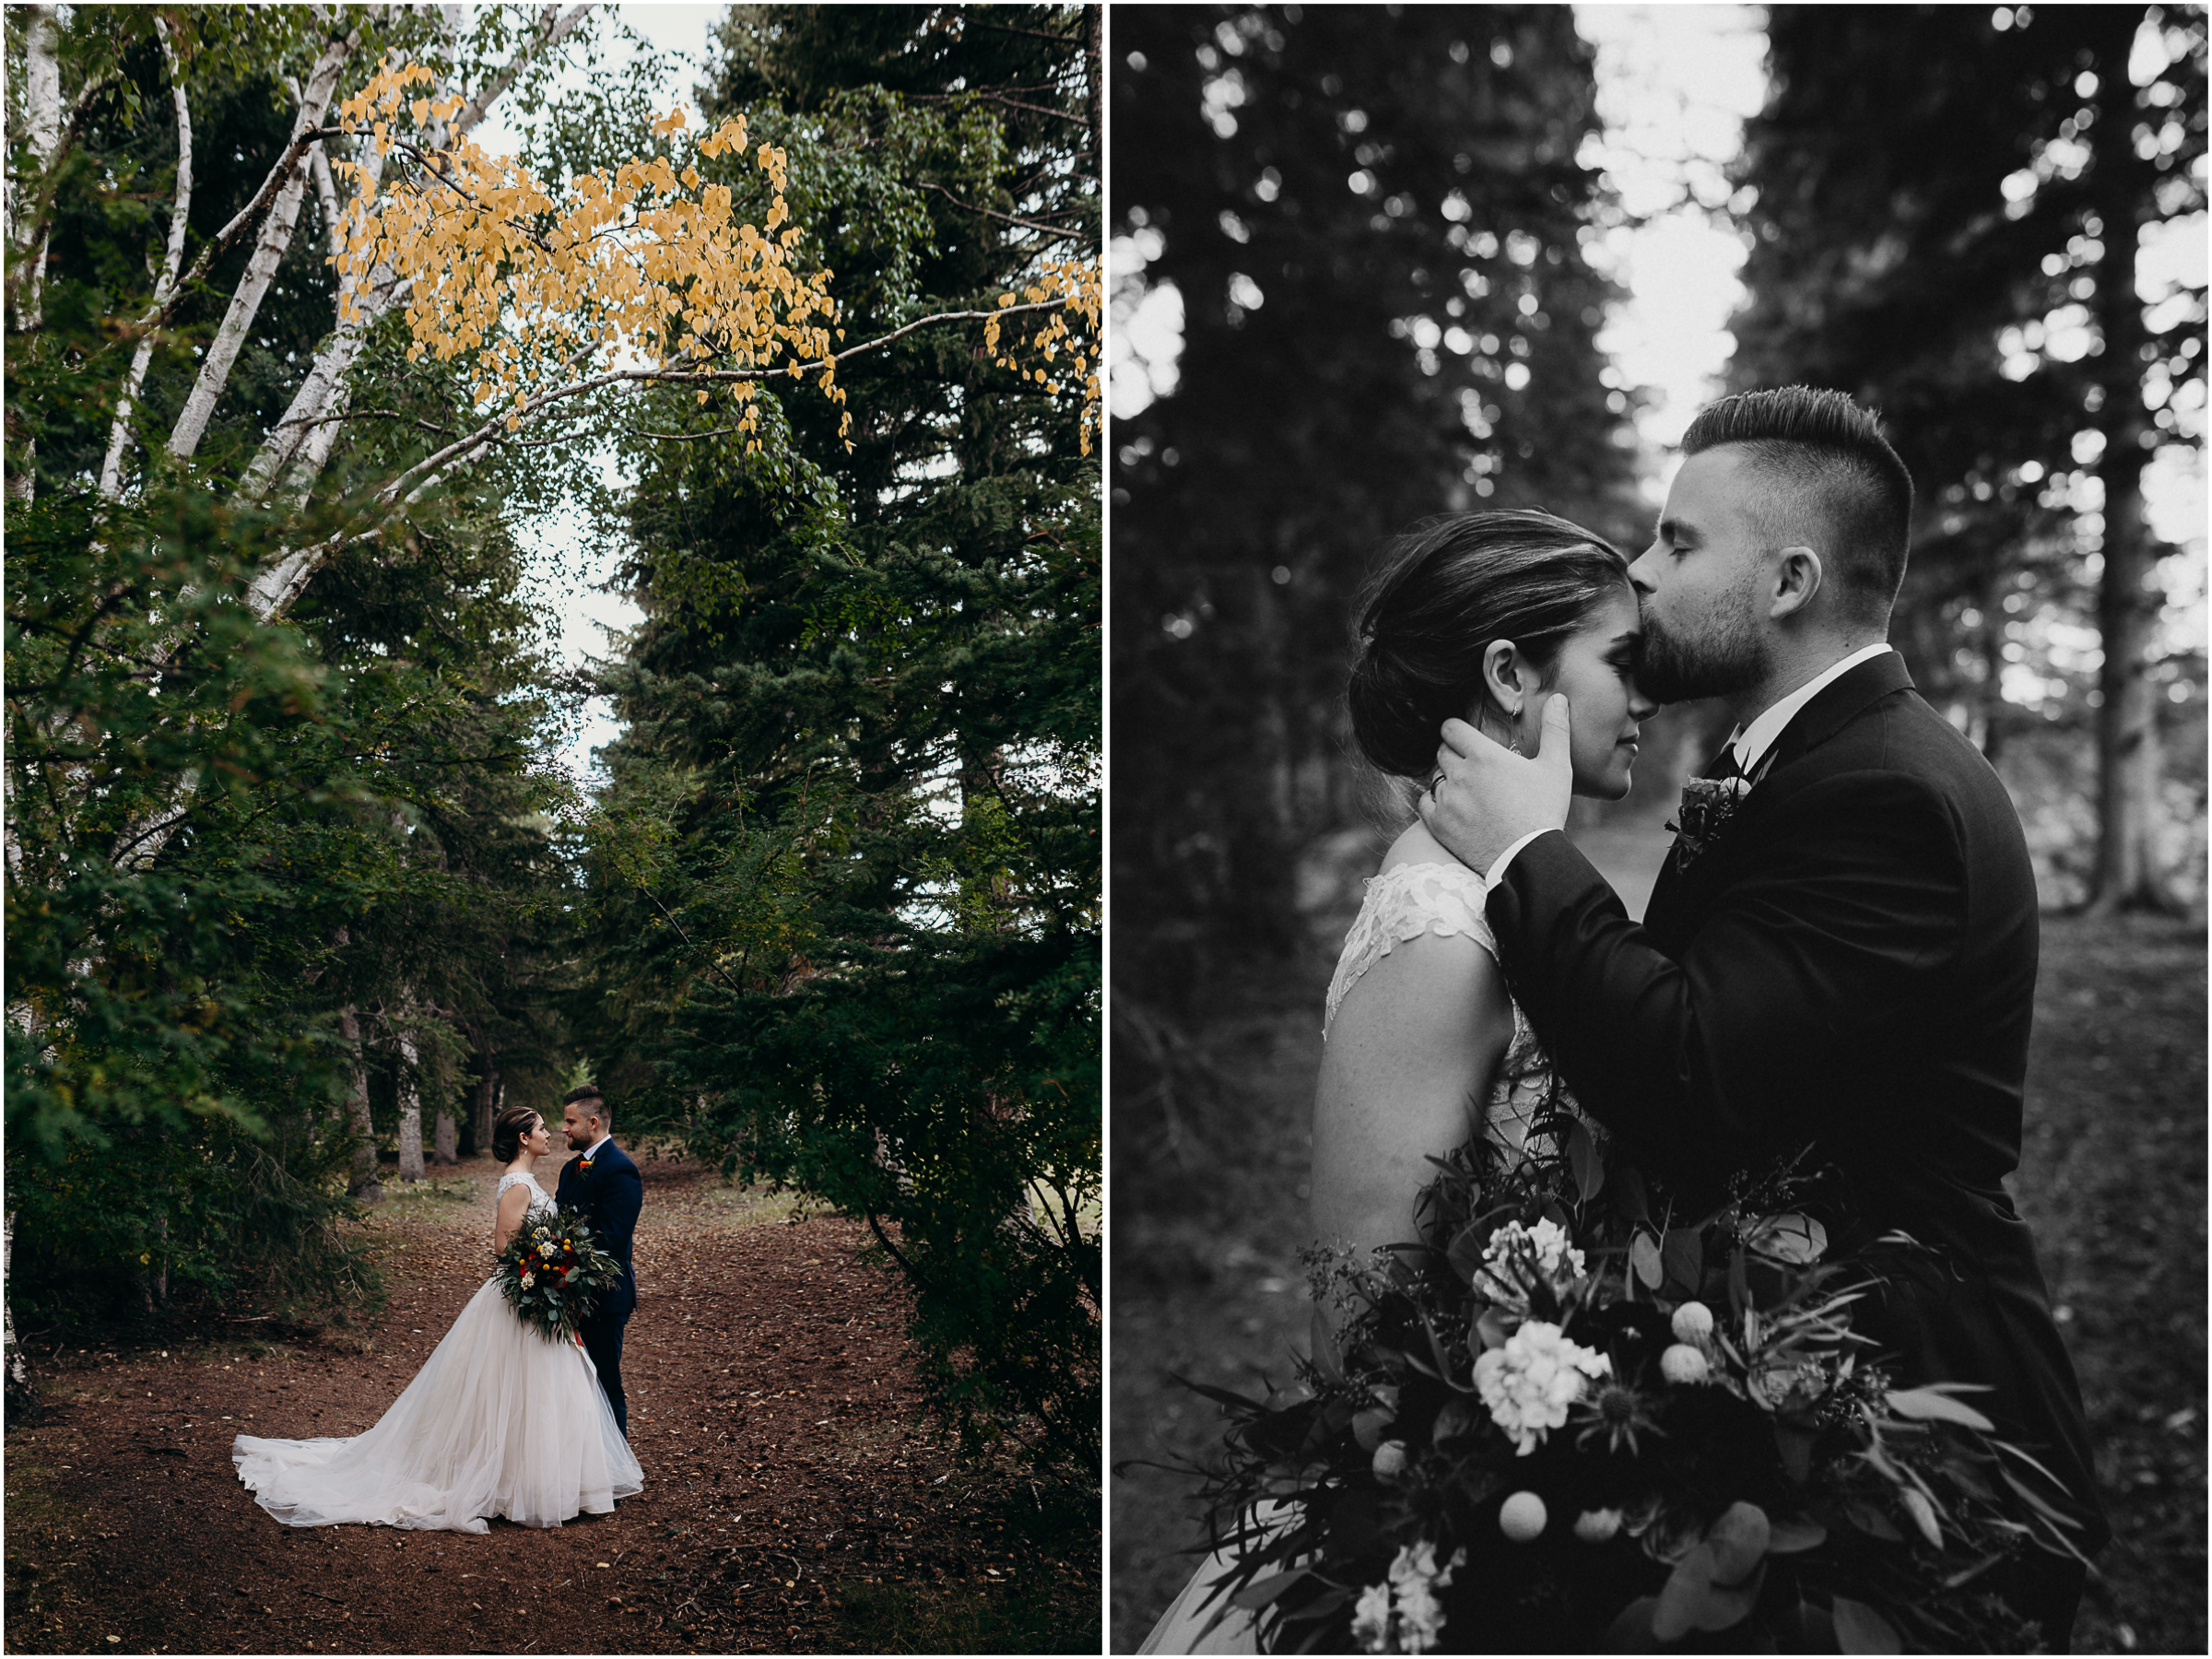 Lauren Hamm Photo | Intimate Elopements | Weddings | Engagements